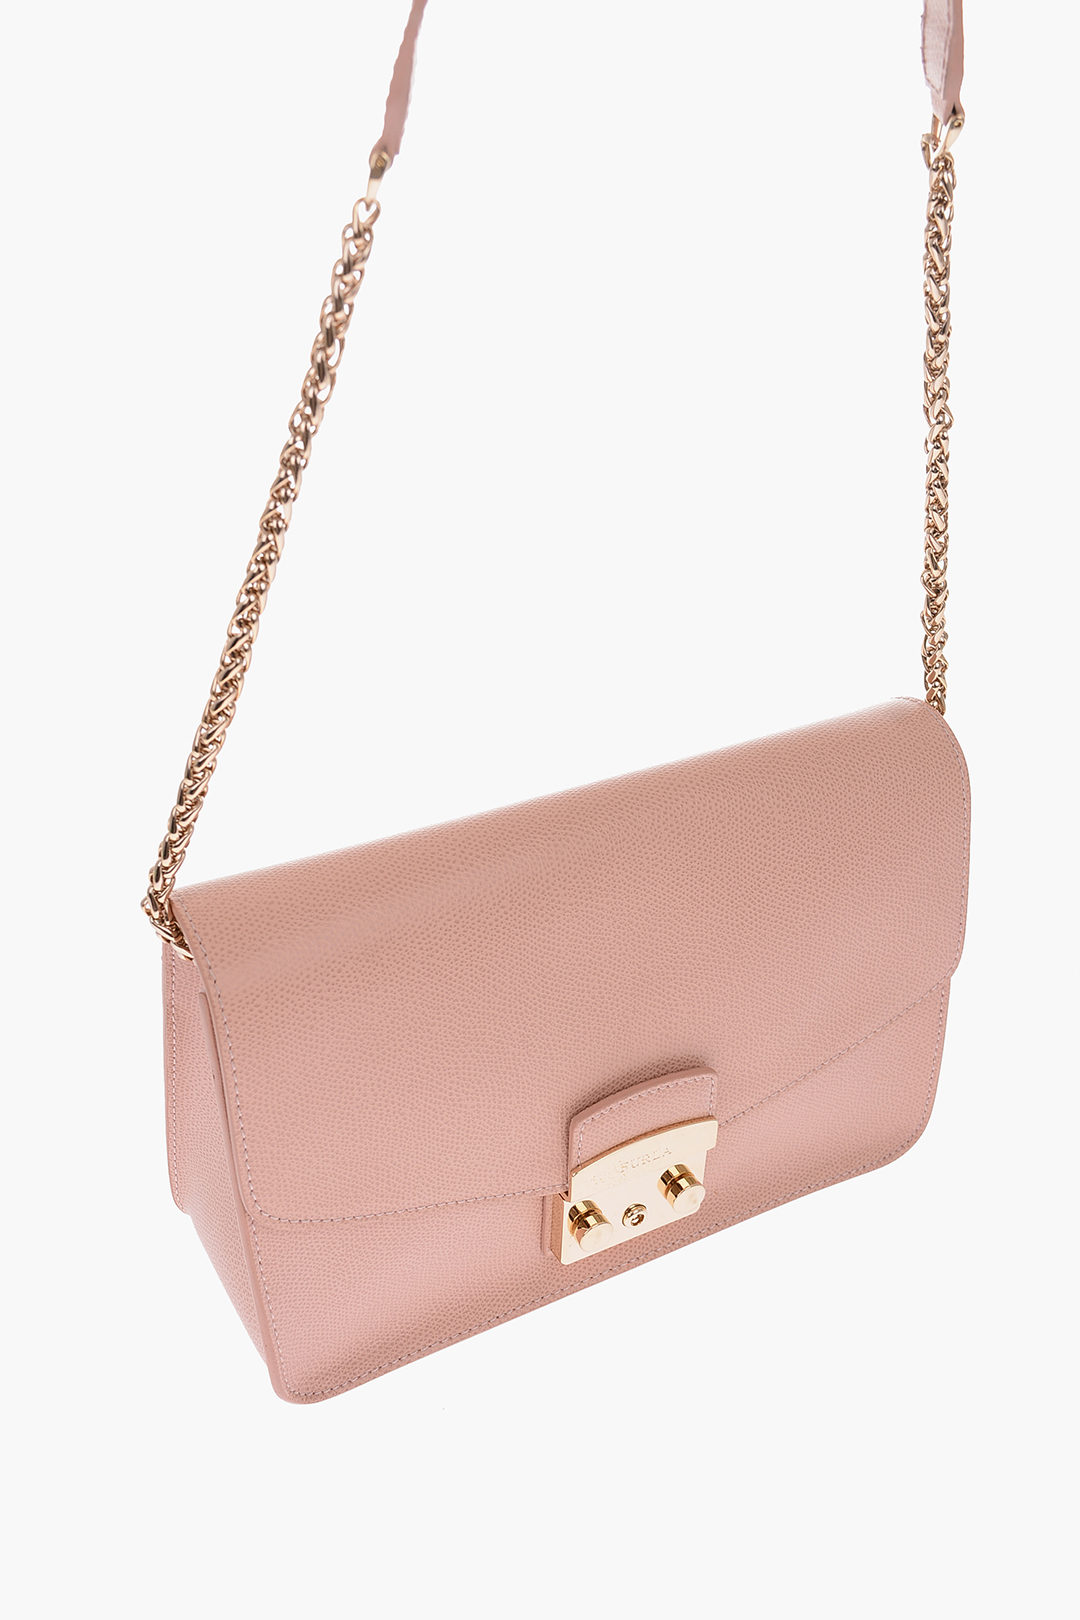 Furla - Metropolis Leather Shoulder Bag Light Pink